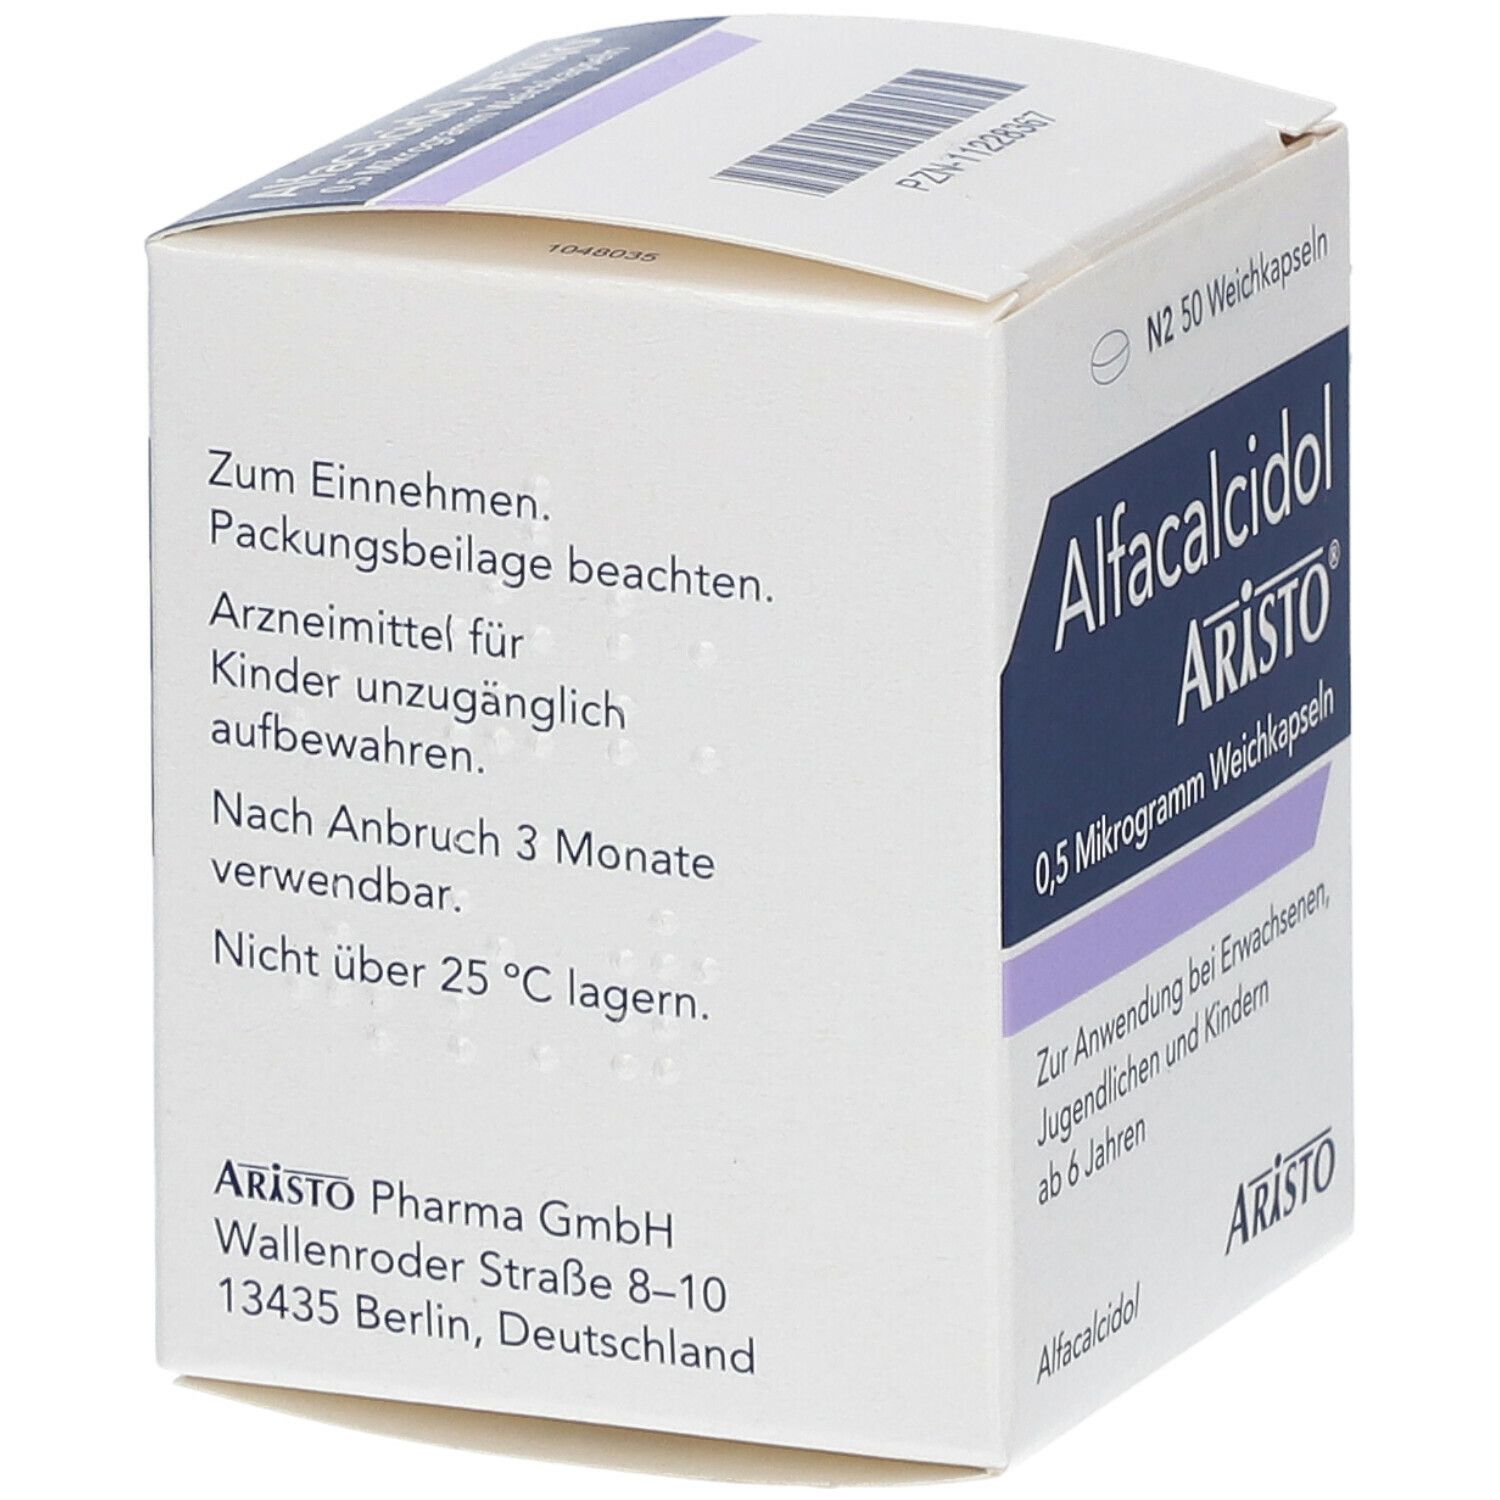 Alfacalcidol Aristo® 0,5 mikrogramm